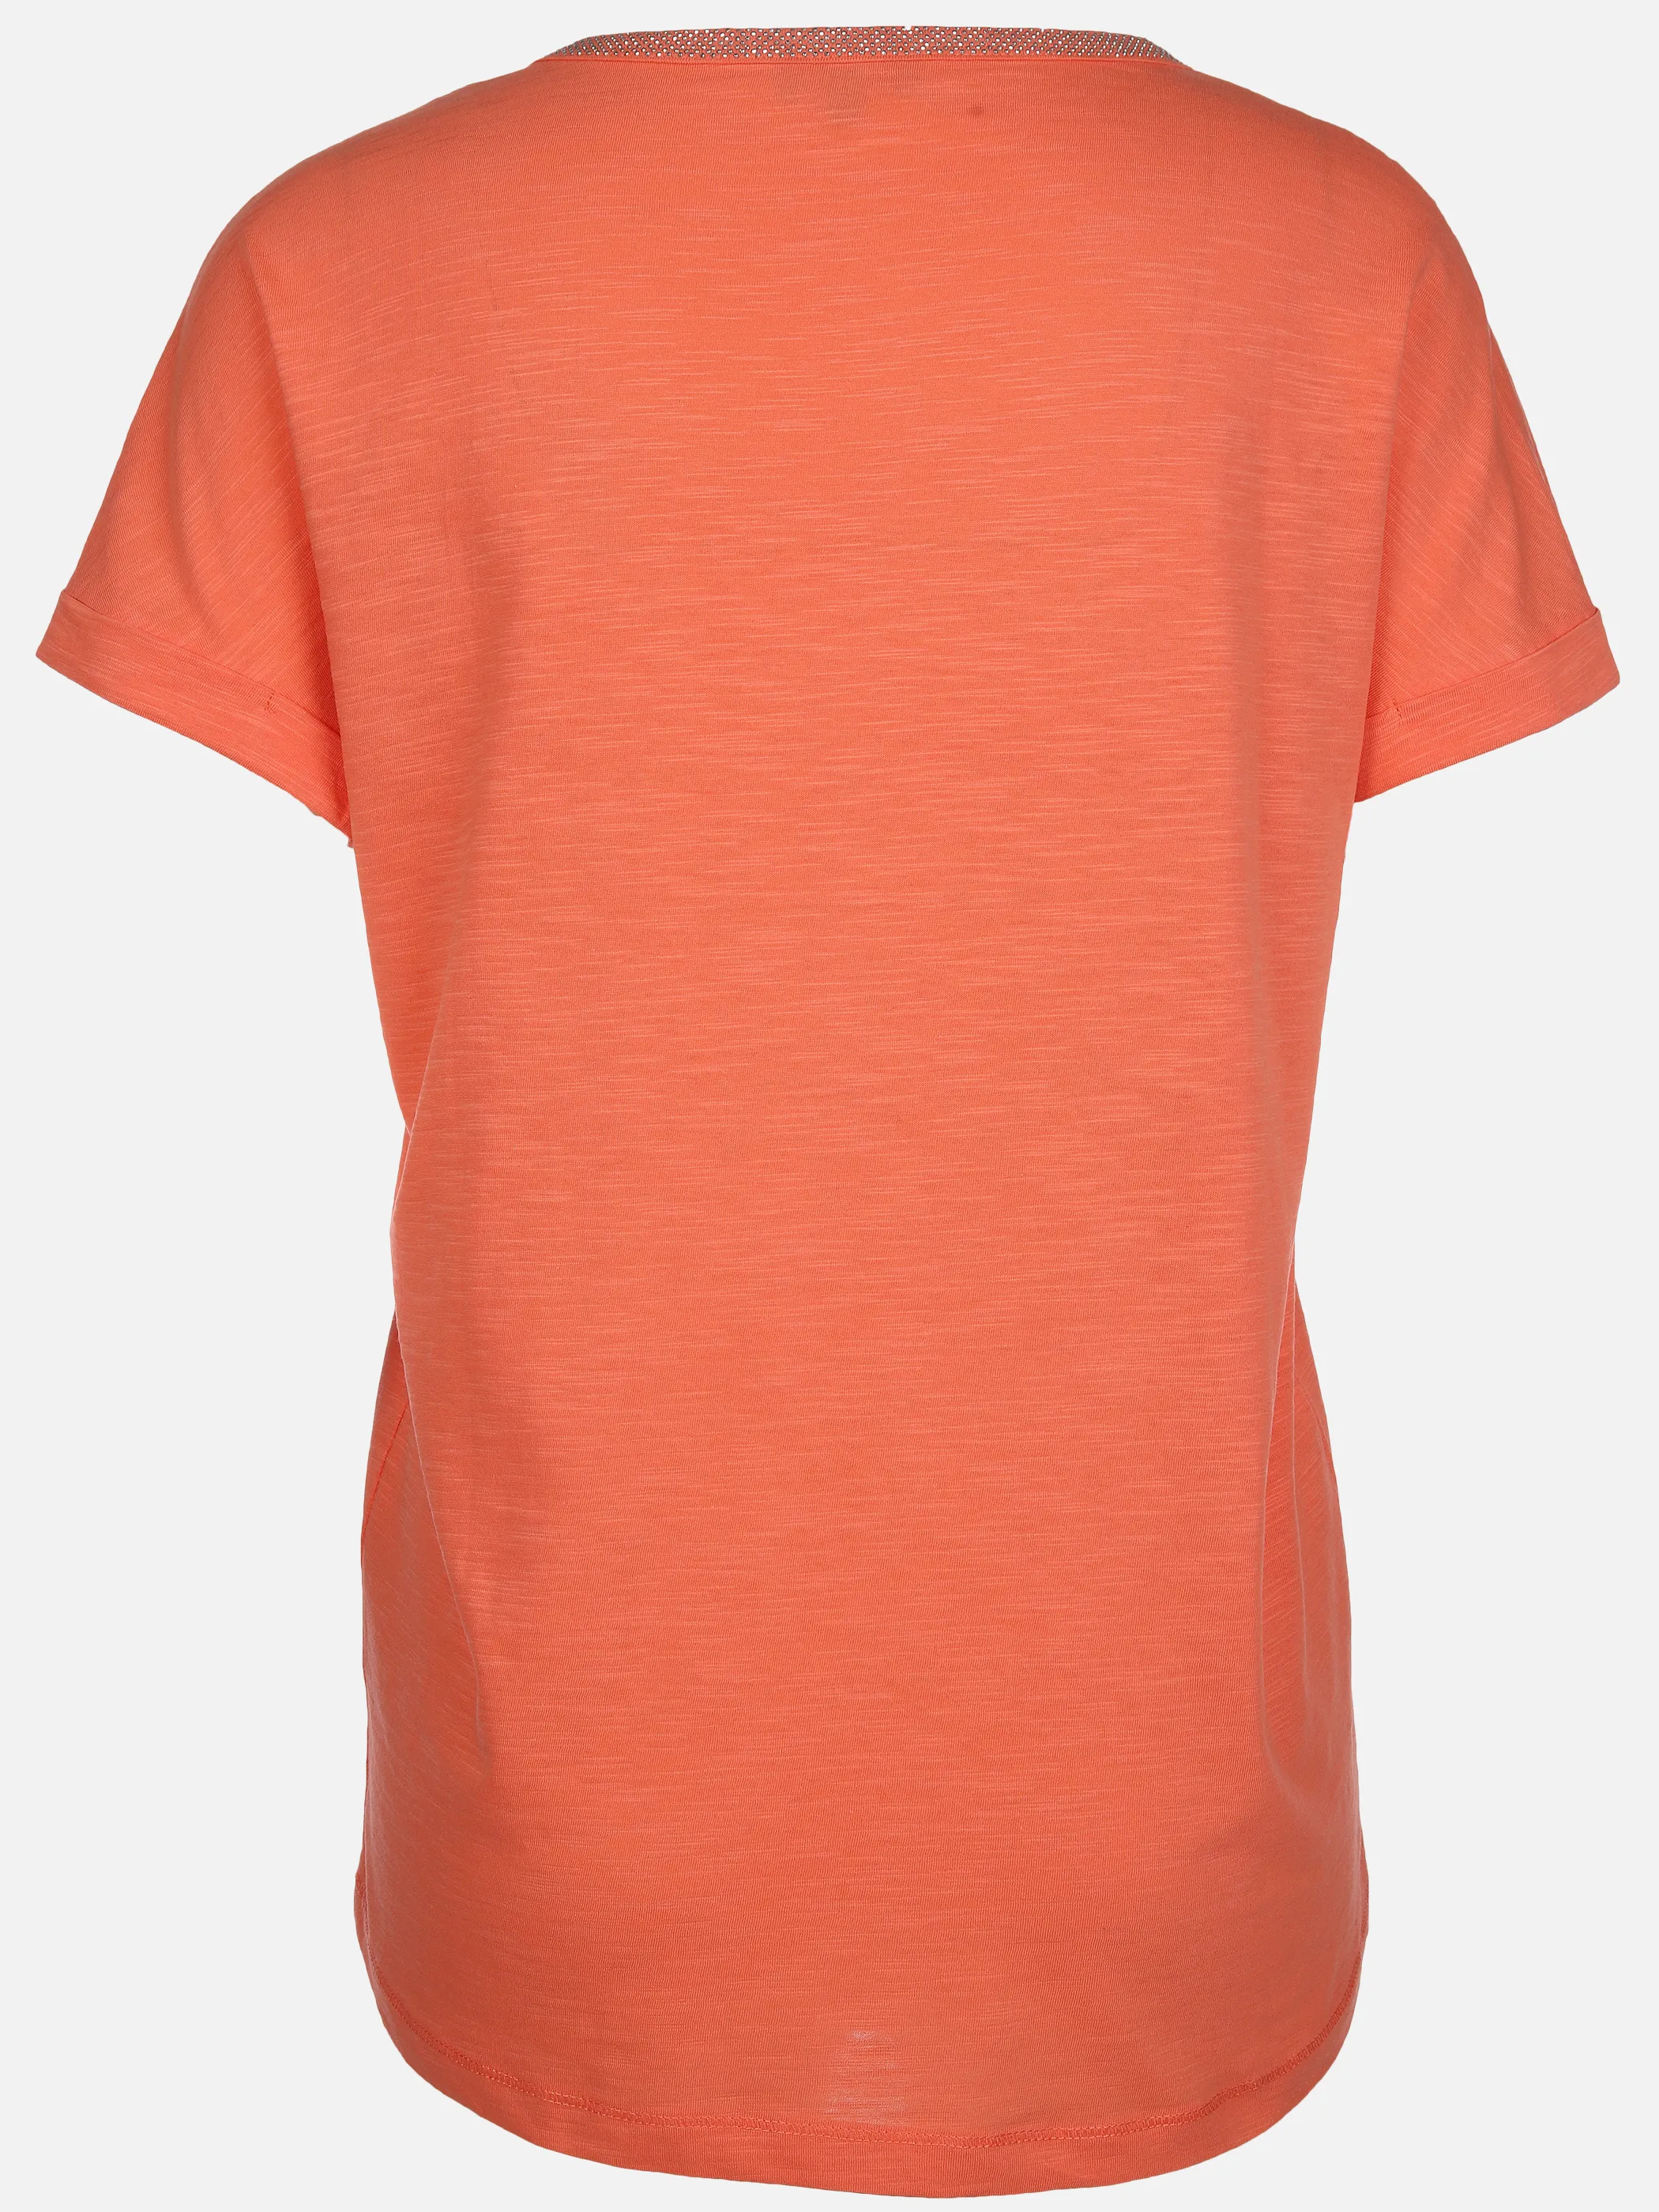 Sure Da-T-Shirt m. Nietendeko Orange 890103 PAPAYA 2